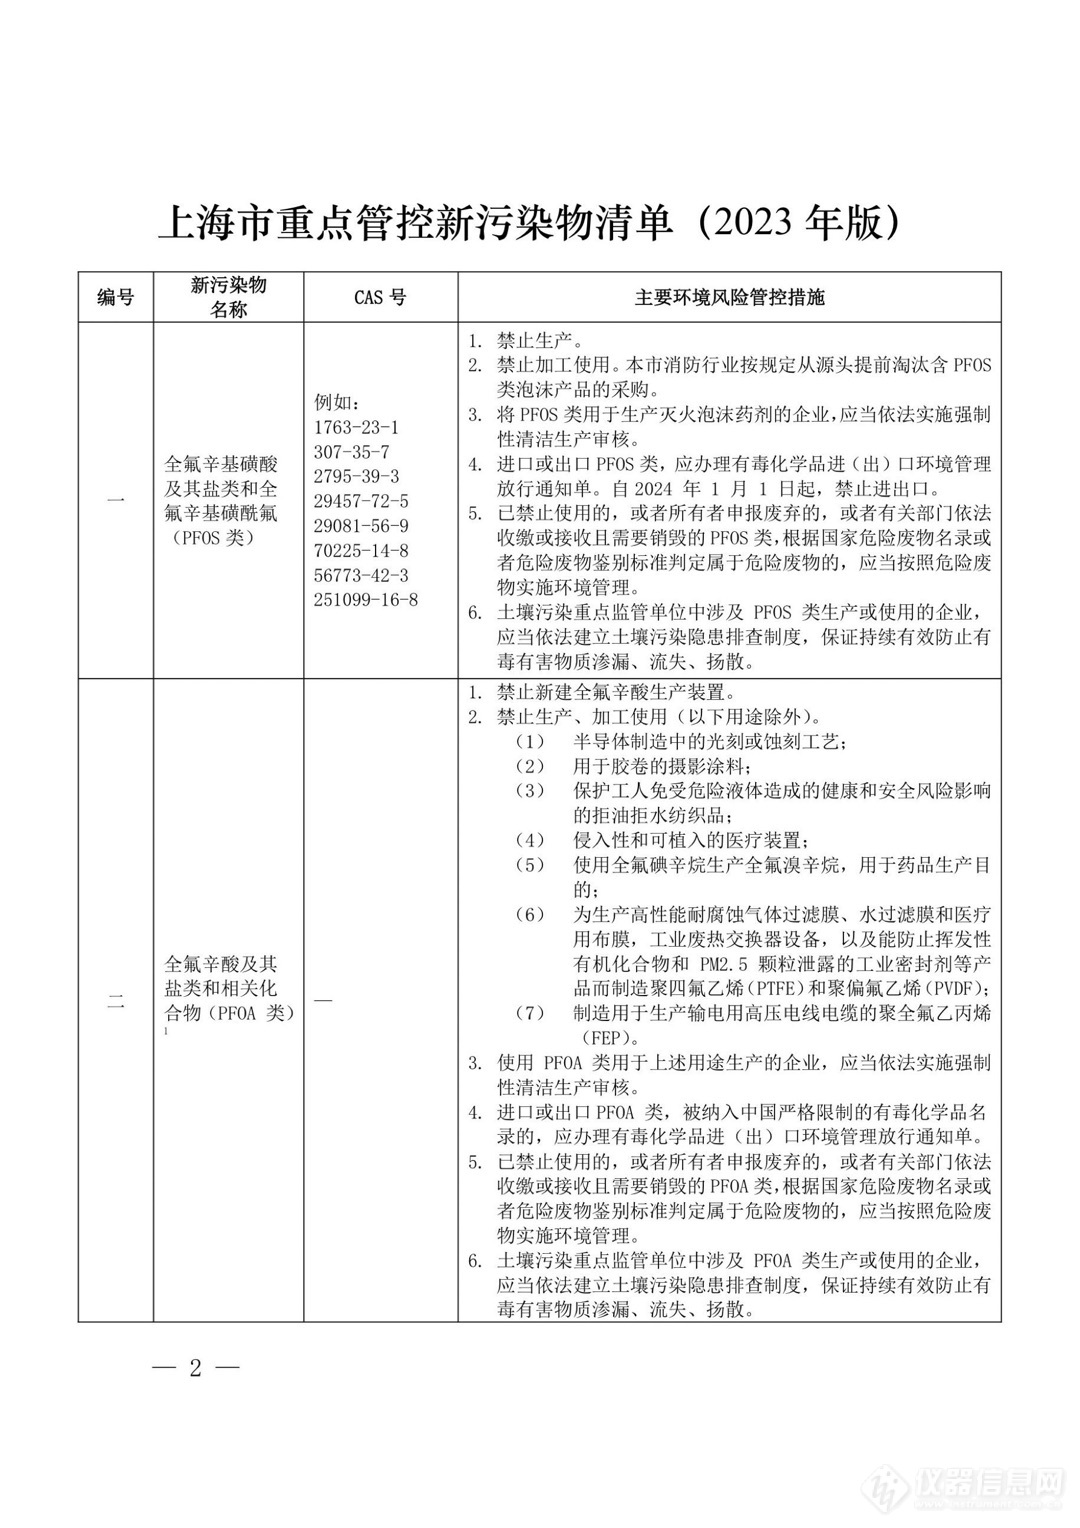 微塑料、双酚A上榜！上海印发重点管控新污染物清单（2023年版）